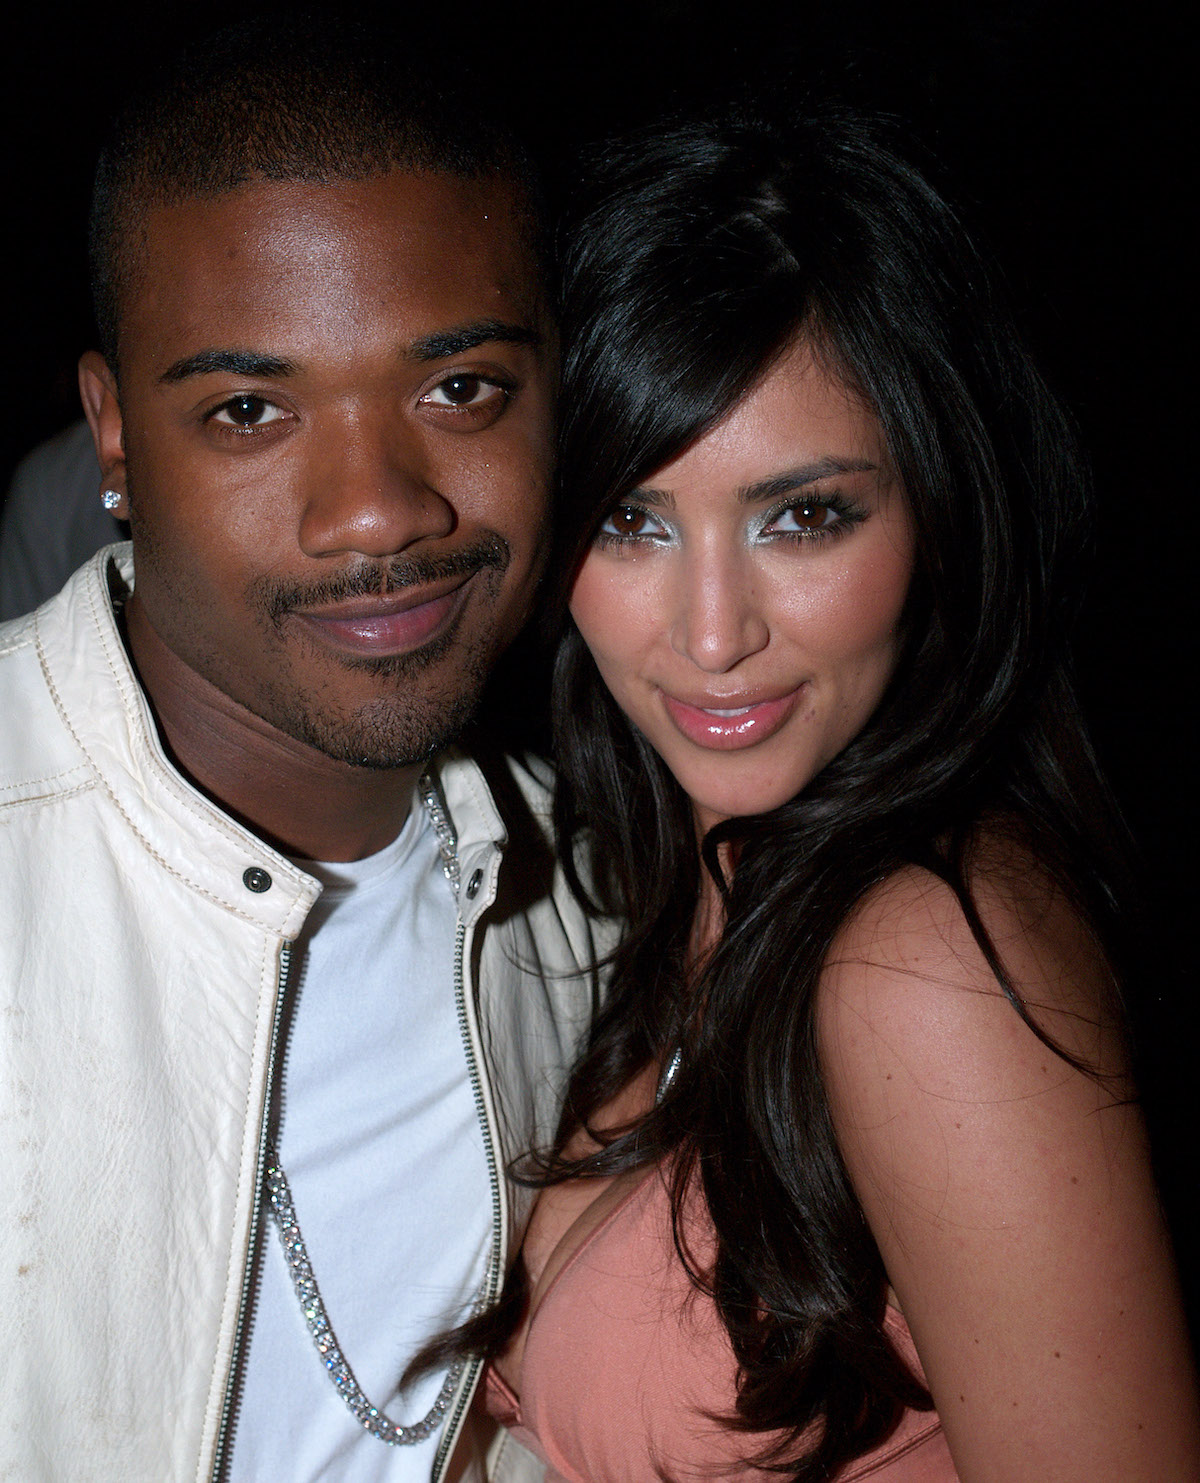 Ray J and Kim Kardashian pose together at an event.